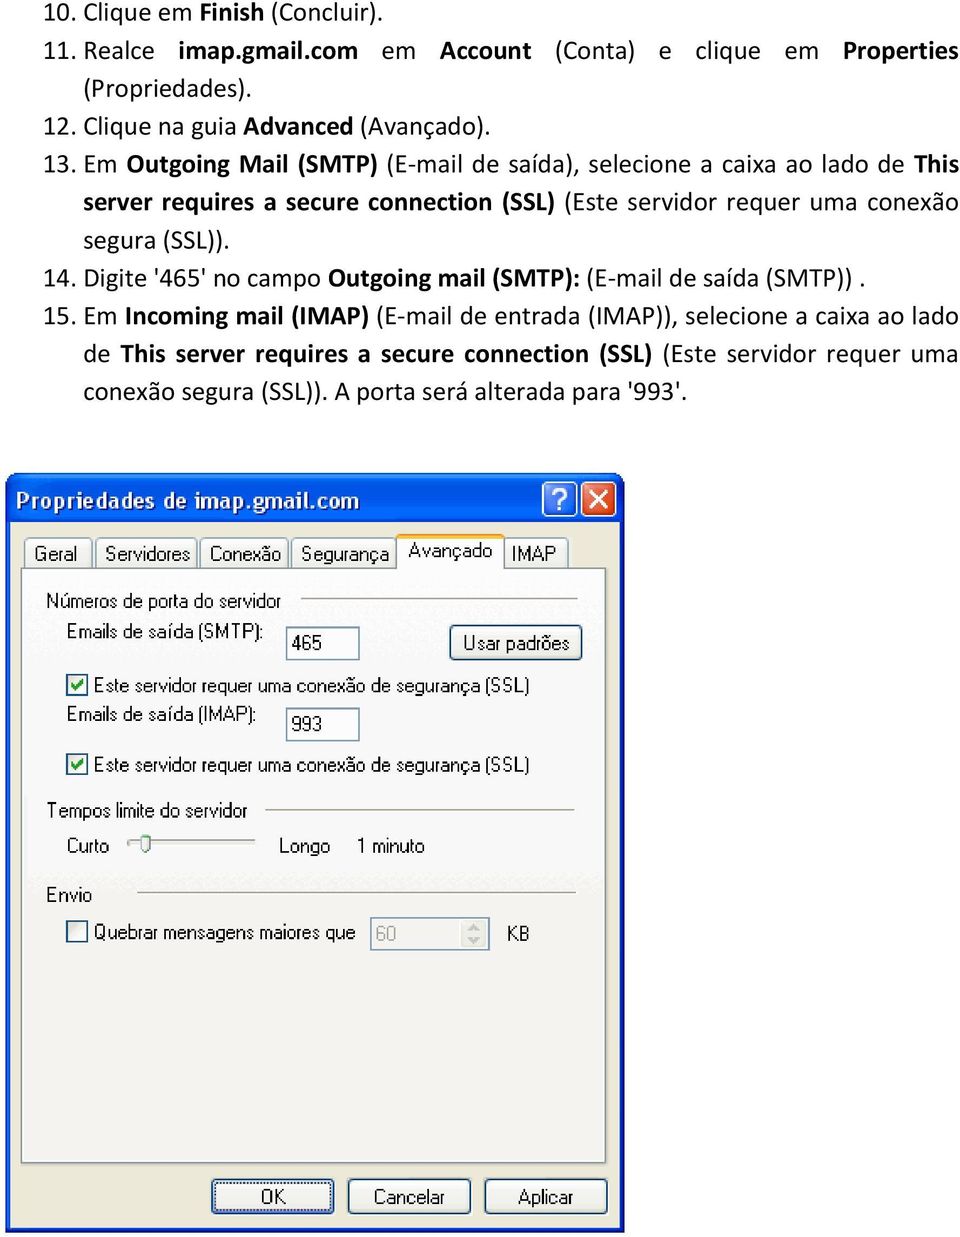 Em Outgoing Mail (SMTP) (E-mail de saída), selecione a caixa ao lado de This server requires a secure connection (SSL) (Este servidor requer uma conexão